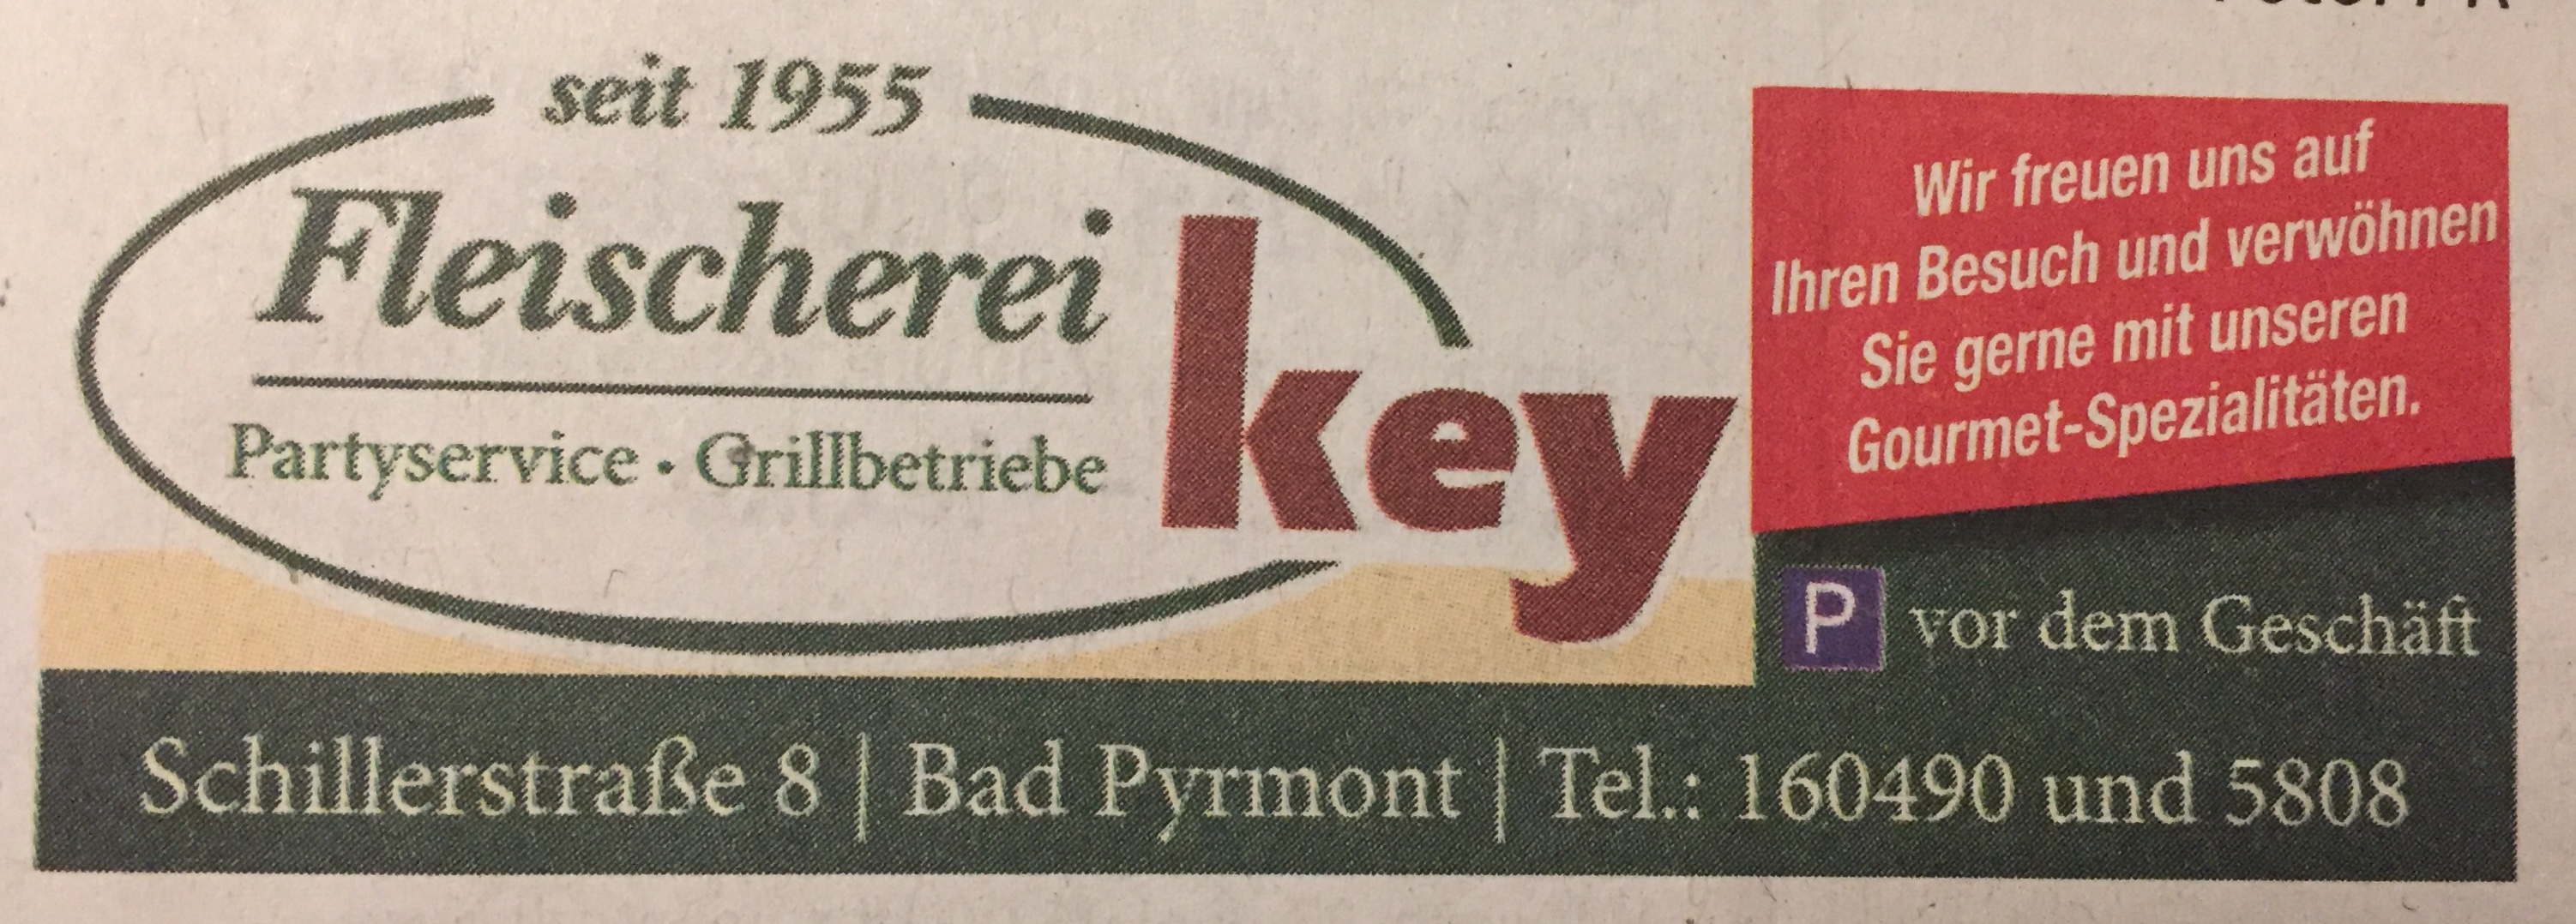 Bild 1 Key Fleischerei in Bad Pyrmont